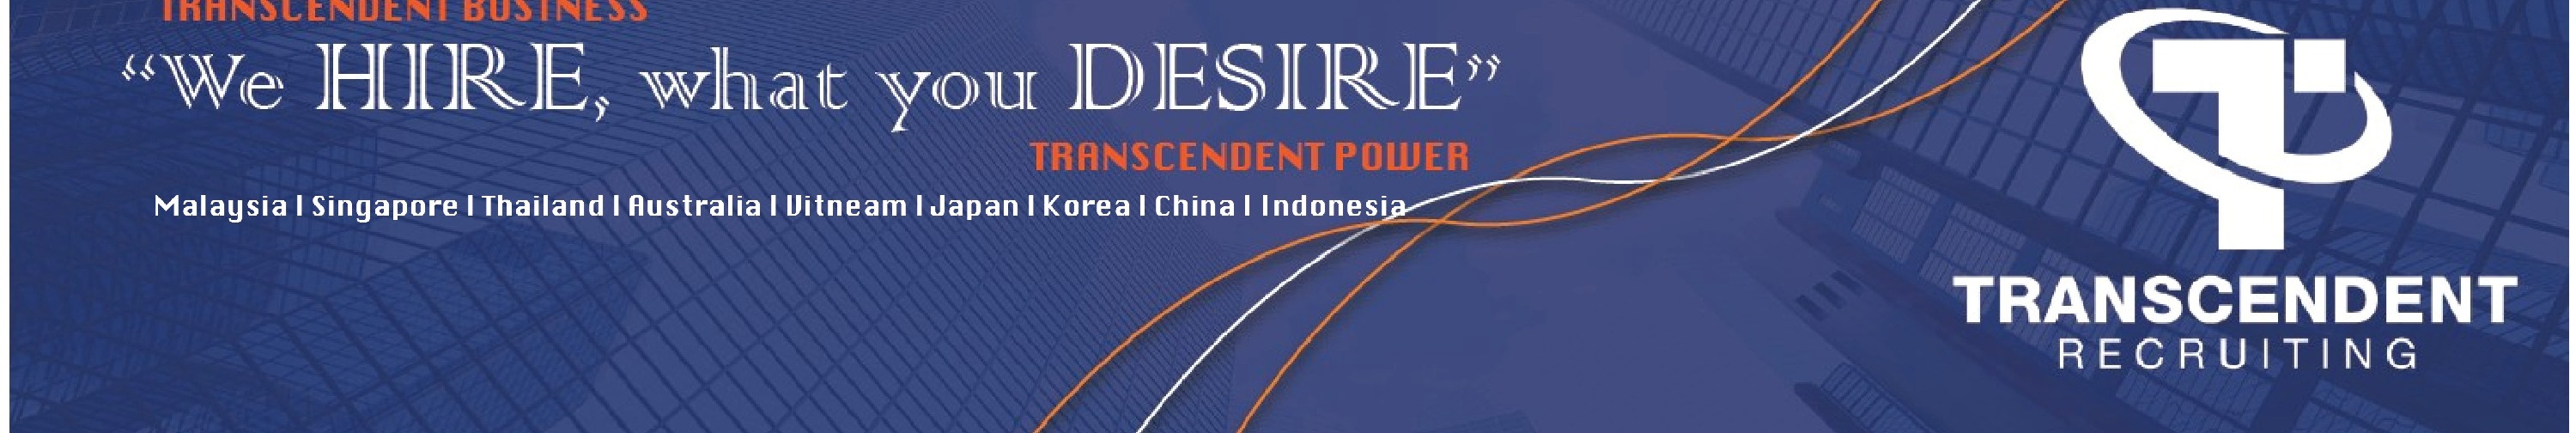 Transcendent Business Services Pte Ltd background